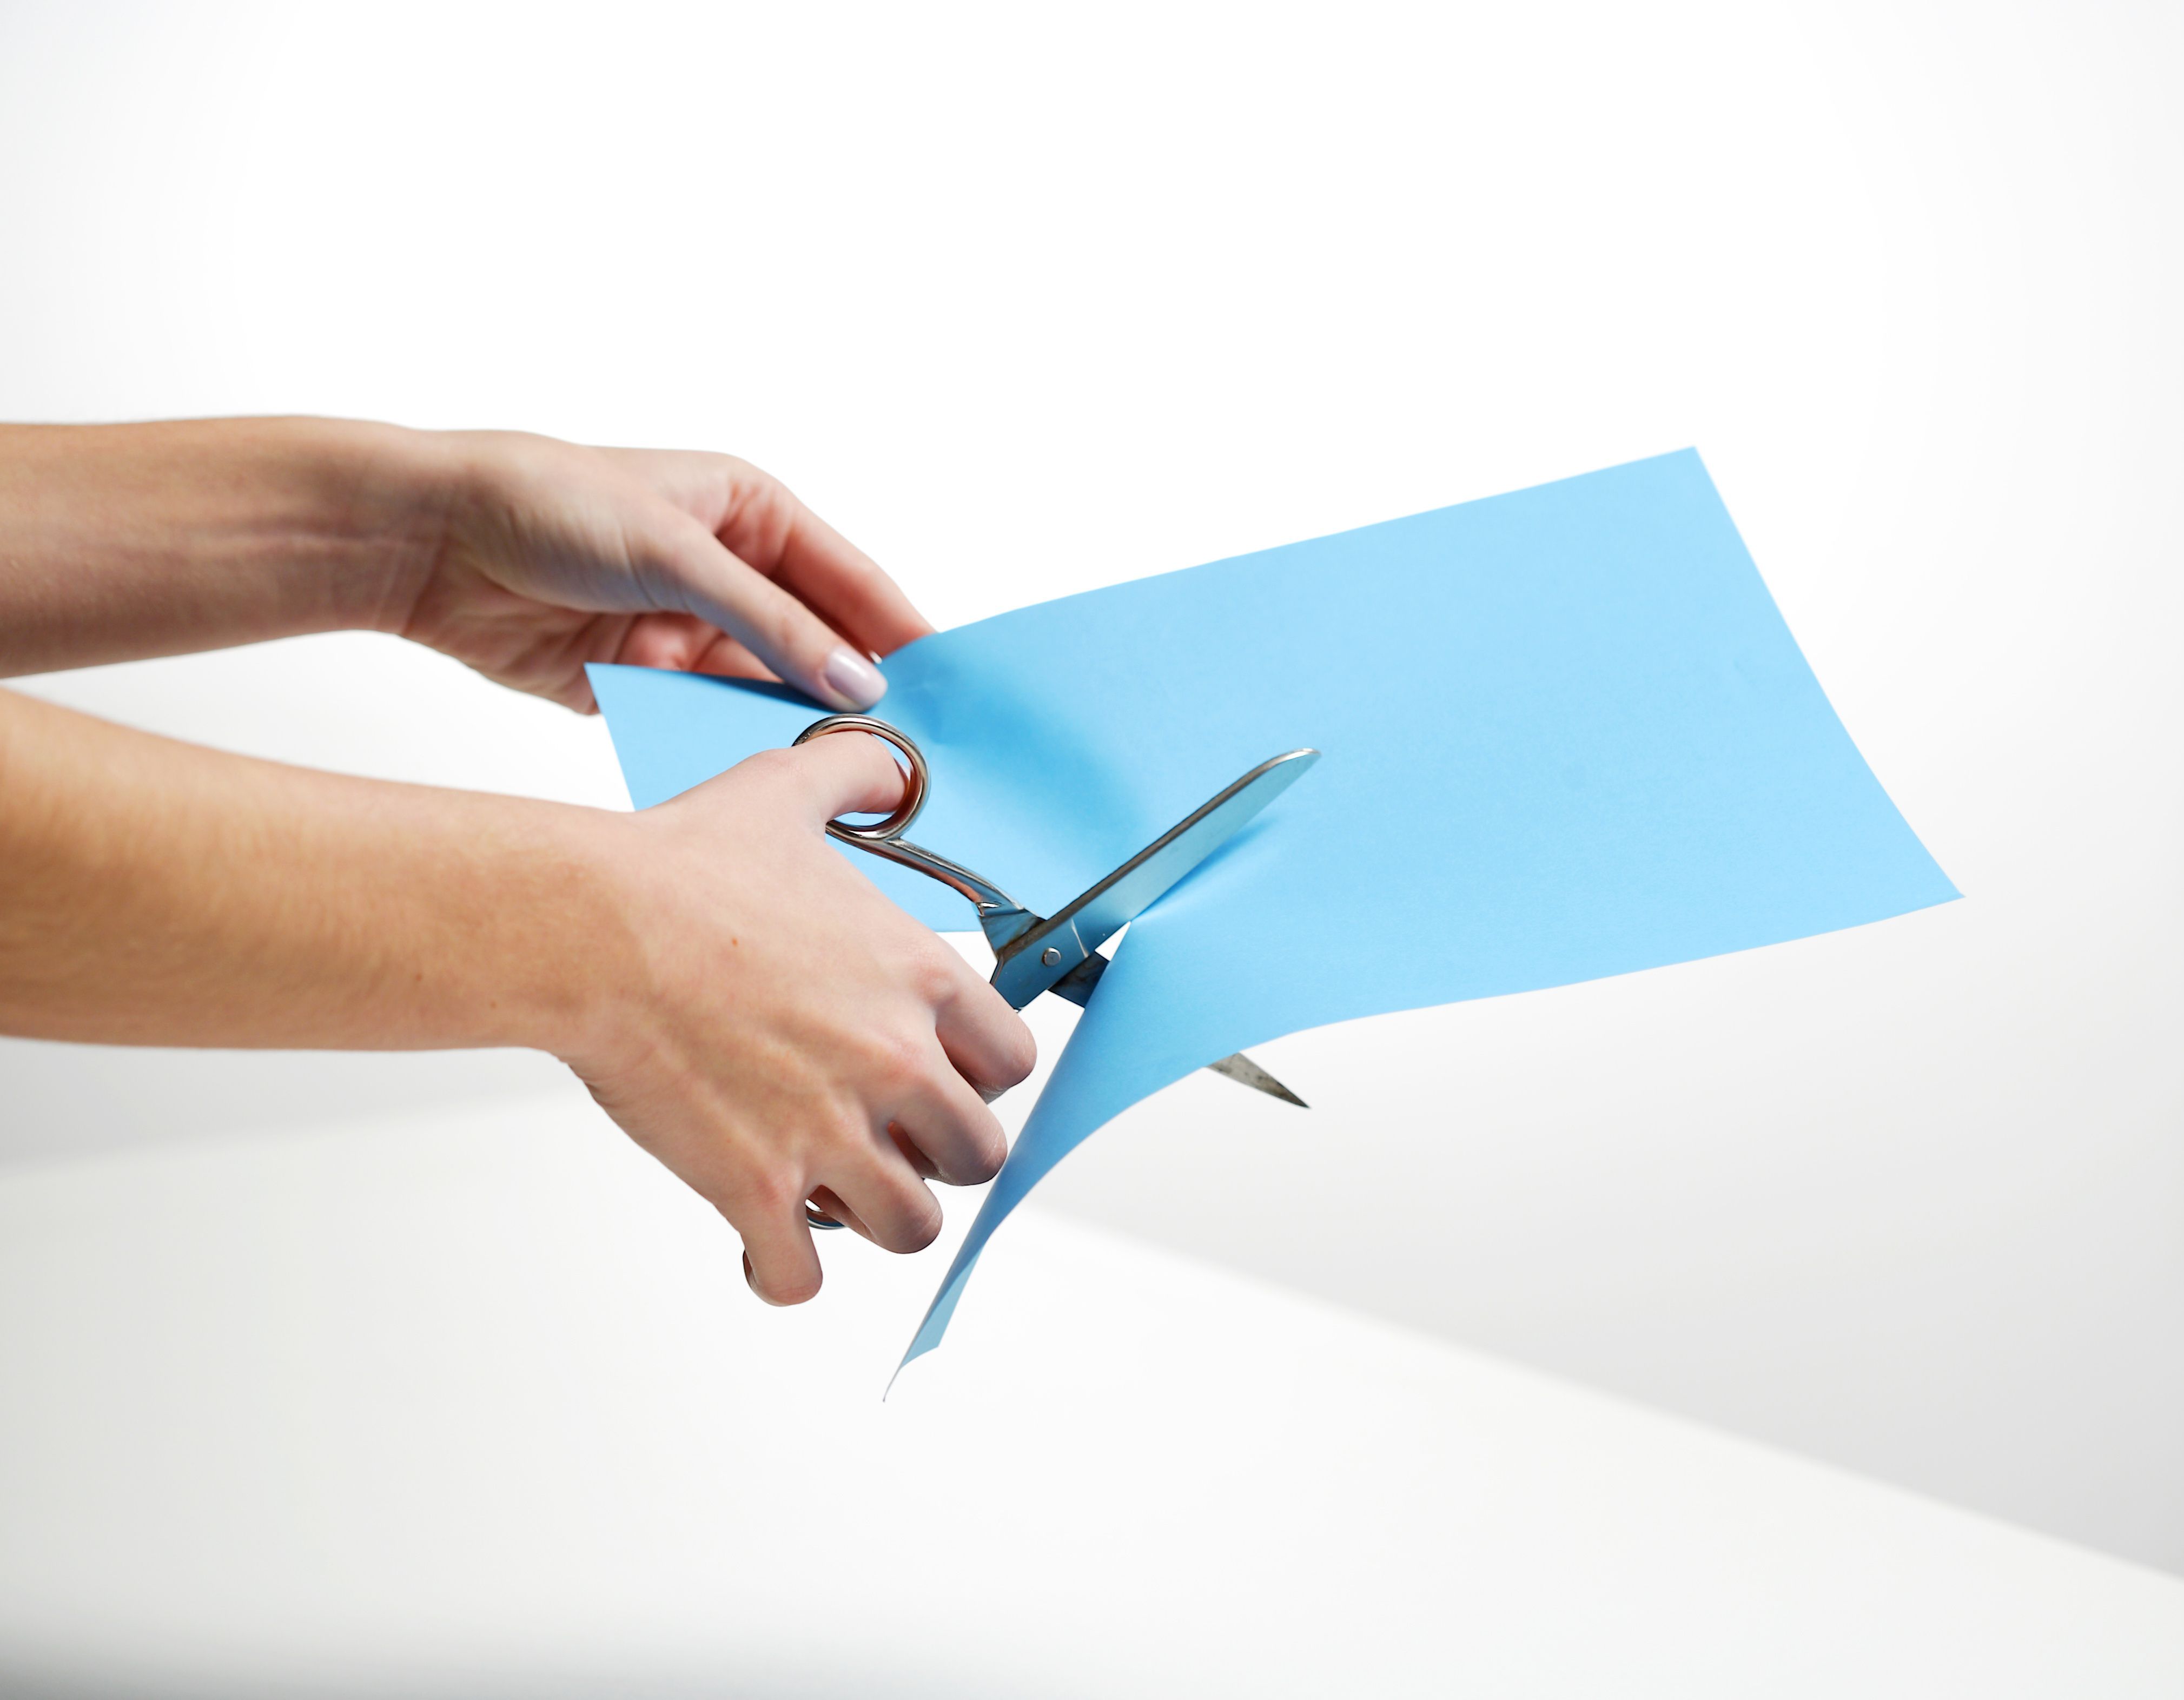 Mit der Papierschere ist präzises Schneiden möglich ohne absetzten zu müssen. Die Grifflöcher sind verschieden groß, damit sie ideal in der Hand liegt.